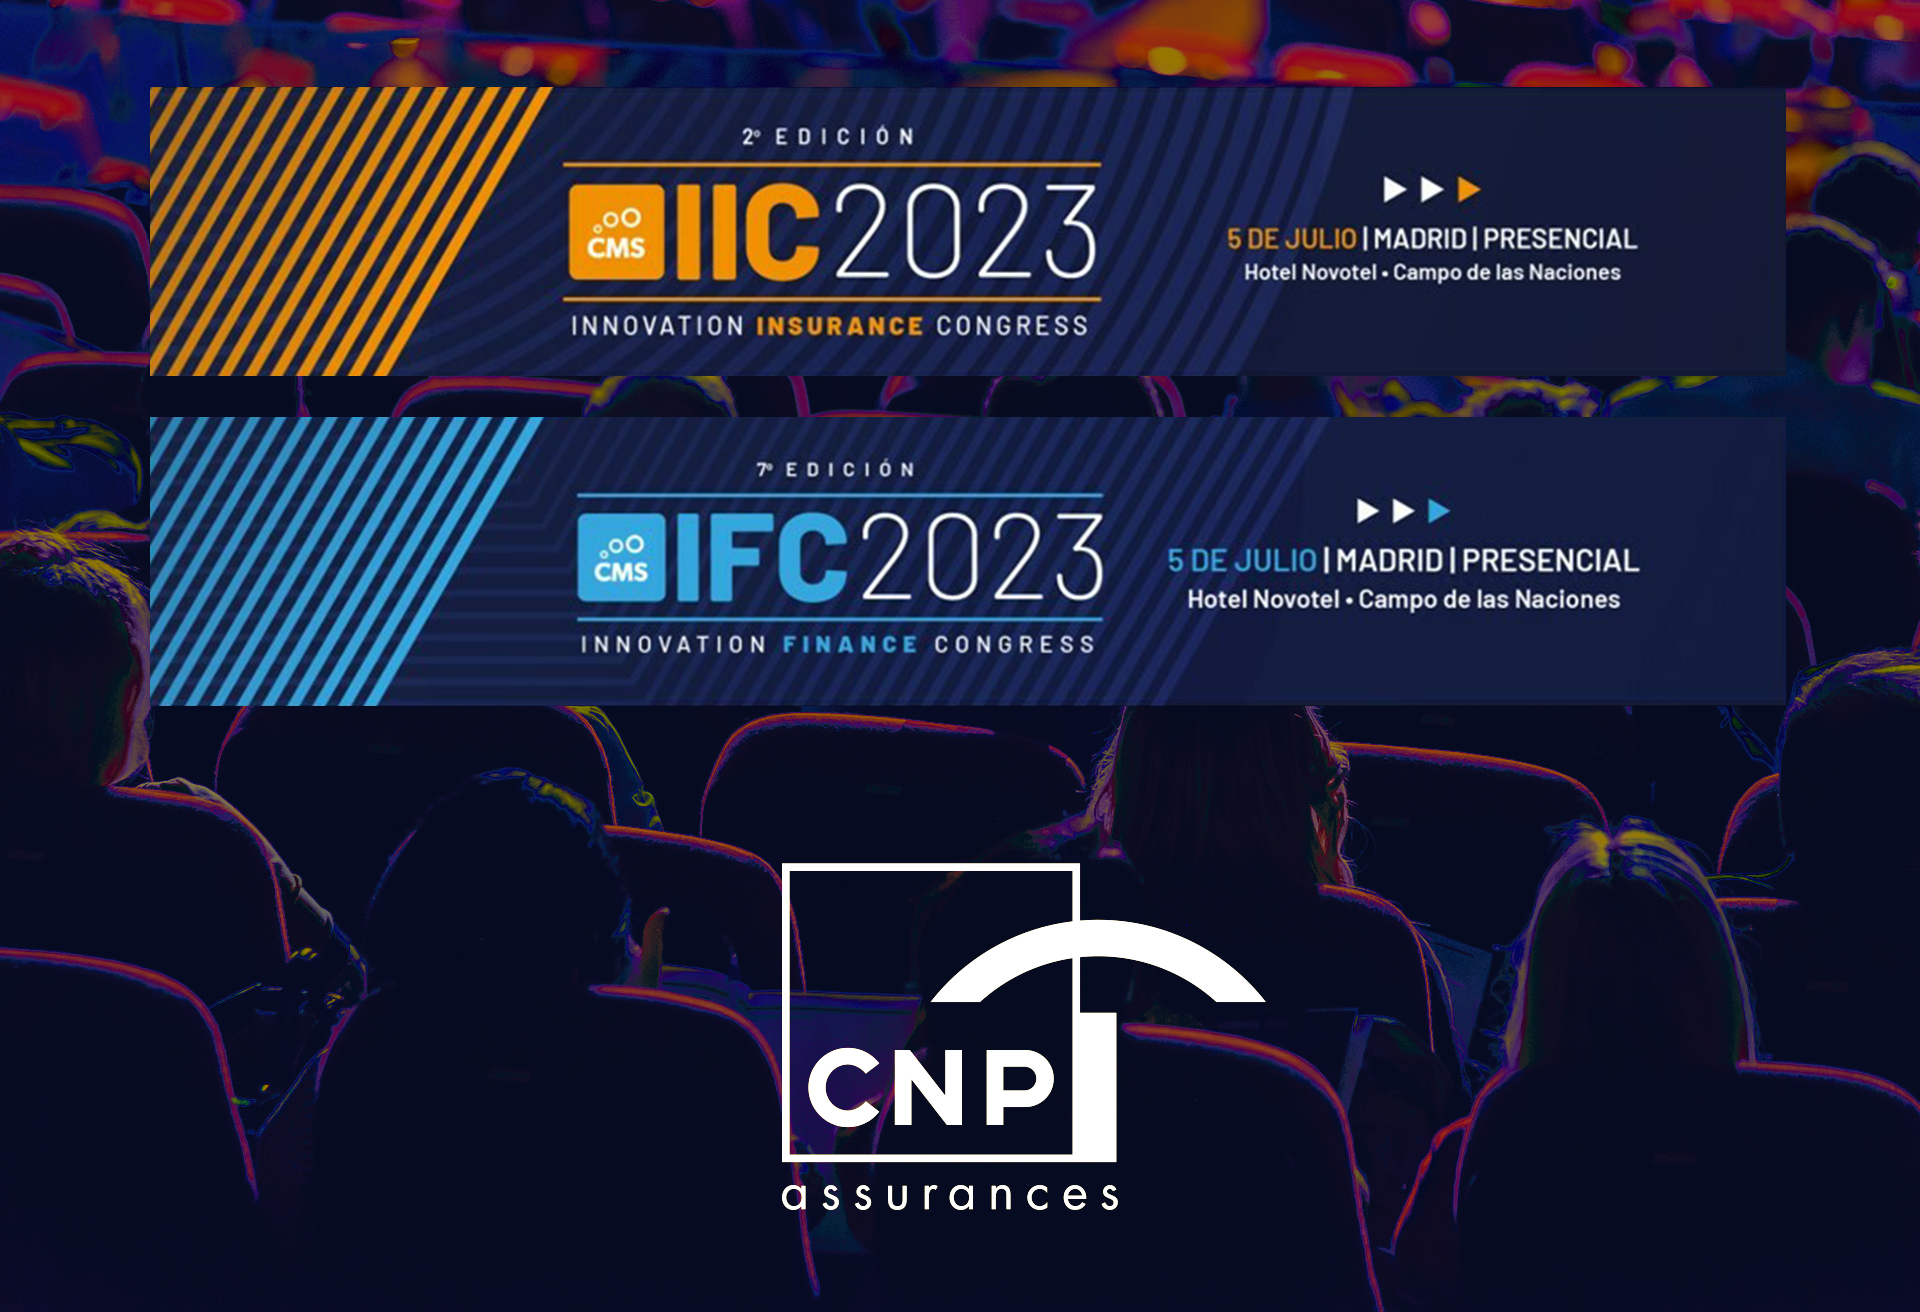 CNP Assurances, Sucursal en España presente en los encuentros Innovation Insurance Congress e Innovation Finance Congress 2023